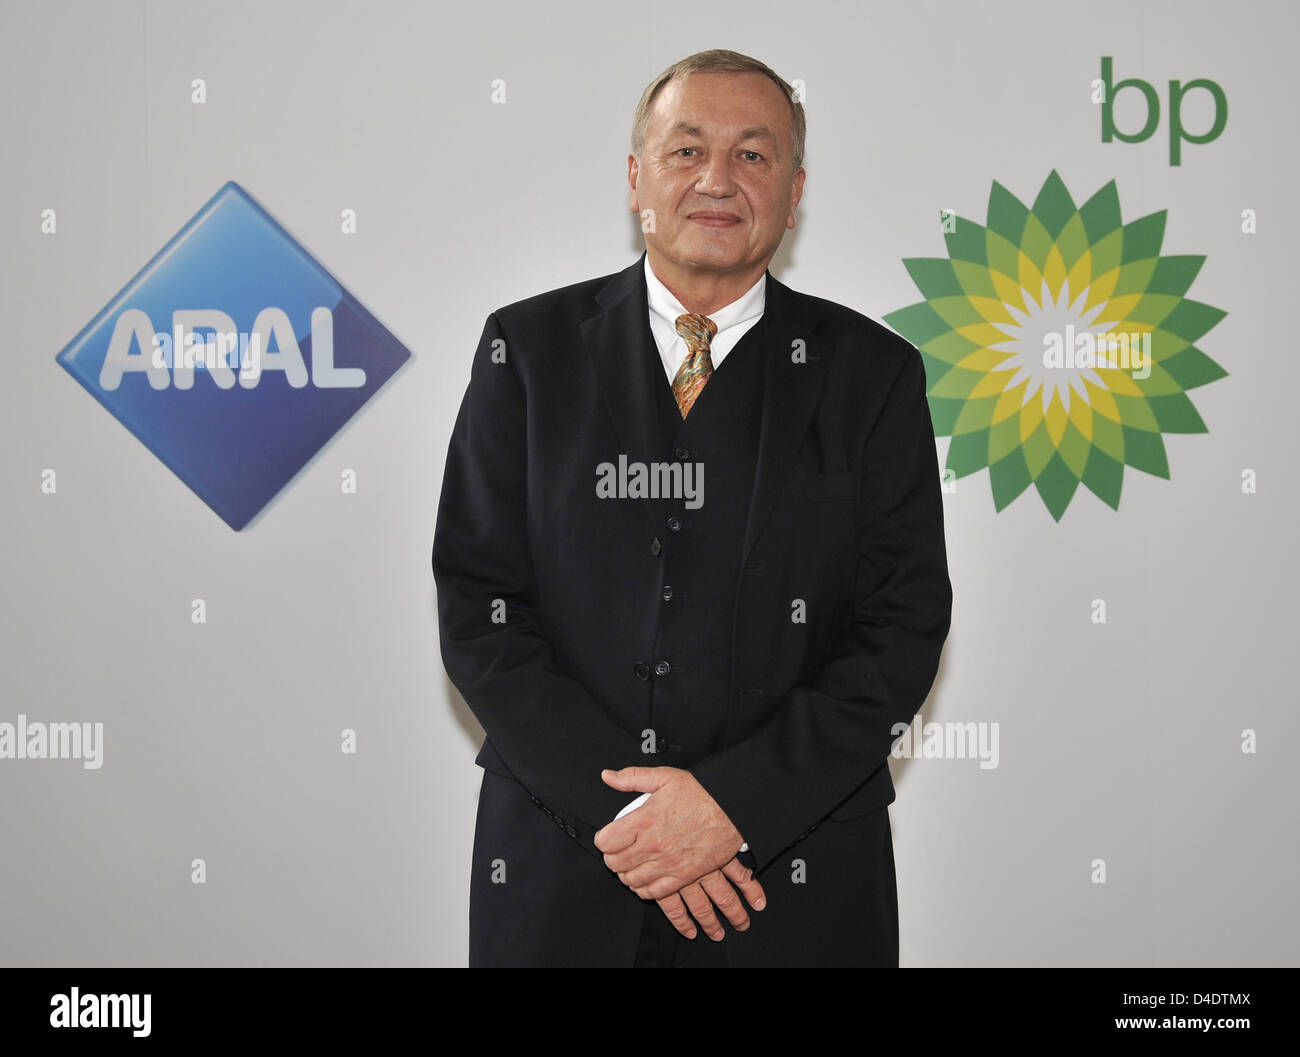 Chef de la direction de BP, allemand Uwe Franke, est photographié avec le BP et logos d'Aral au cours de la conférence de presse annuelle à Duesseldorf, Allemagne, 24 avril 2008. Le résultat annuel de la société British Energy s'est élevé à 666 millions d'euros en 2007, soit beaucoup plus qu'en 2006 (607 millions d'euros). Photo : ACHIM SCHEIDEMANN Banque D'Images